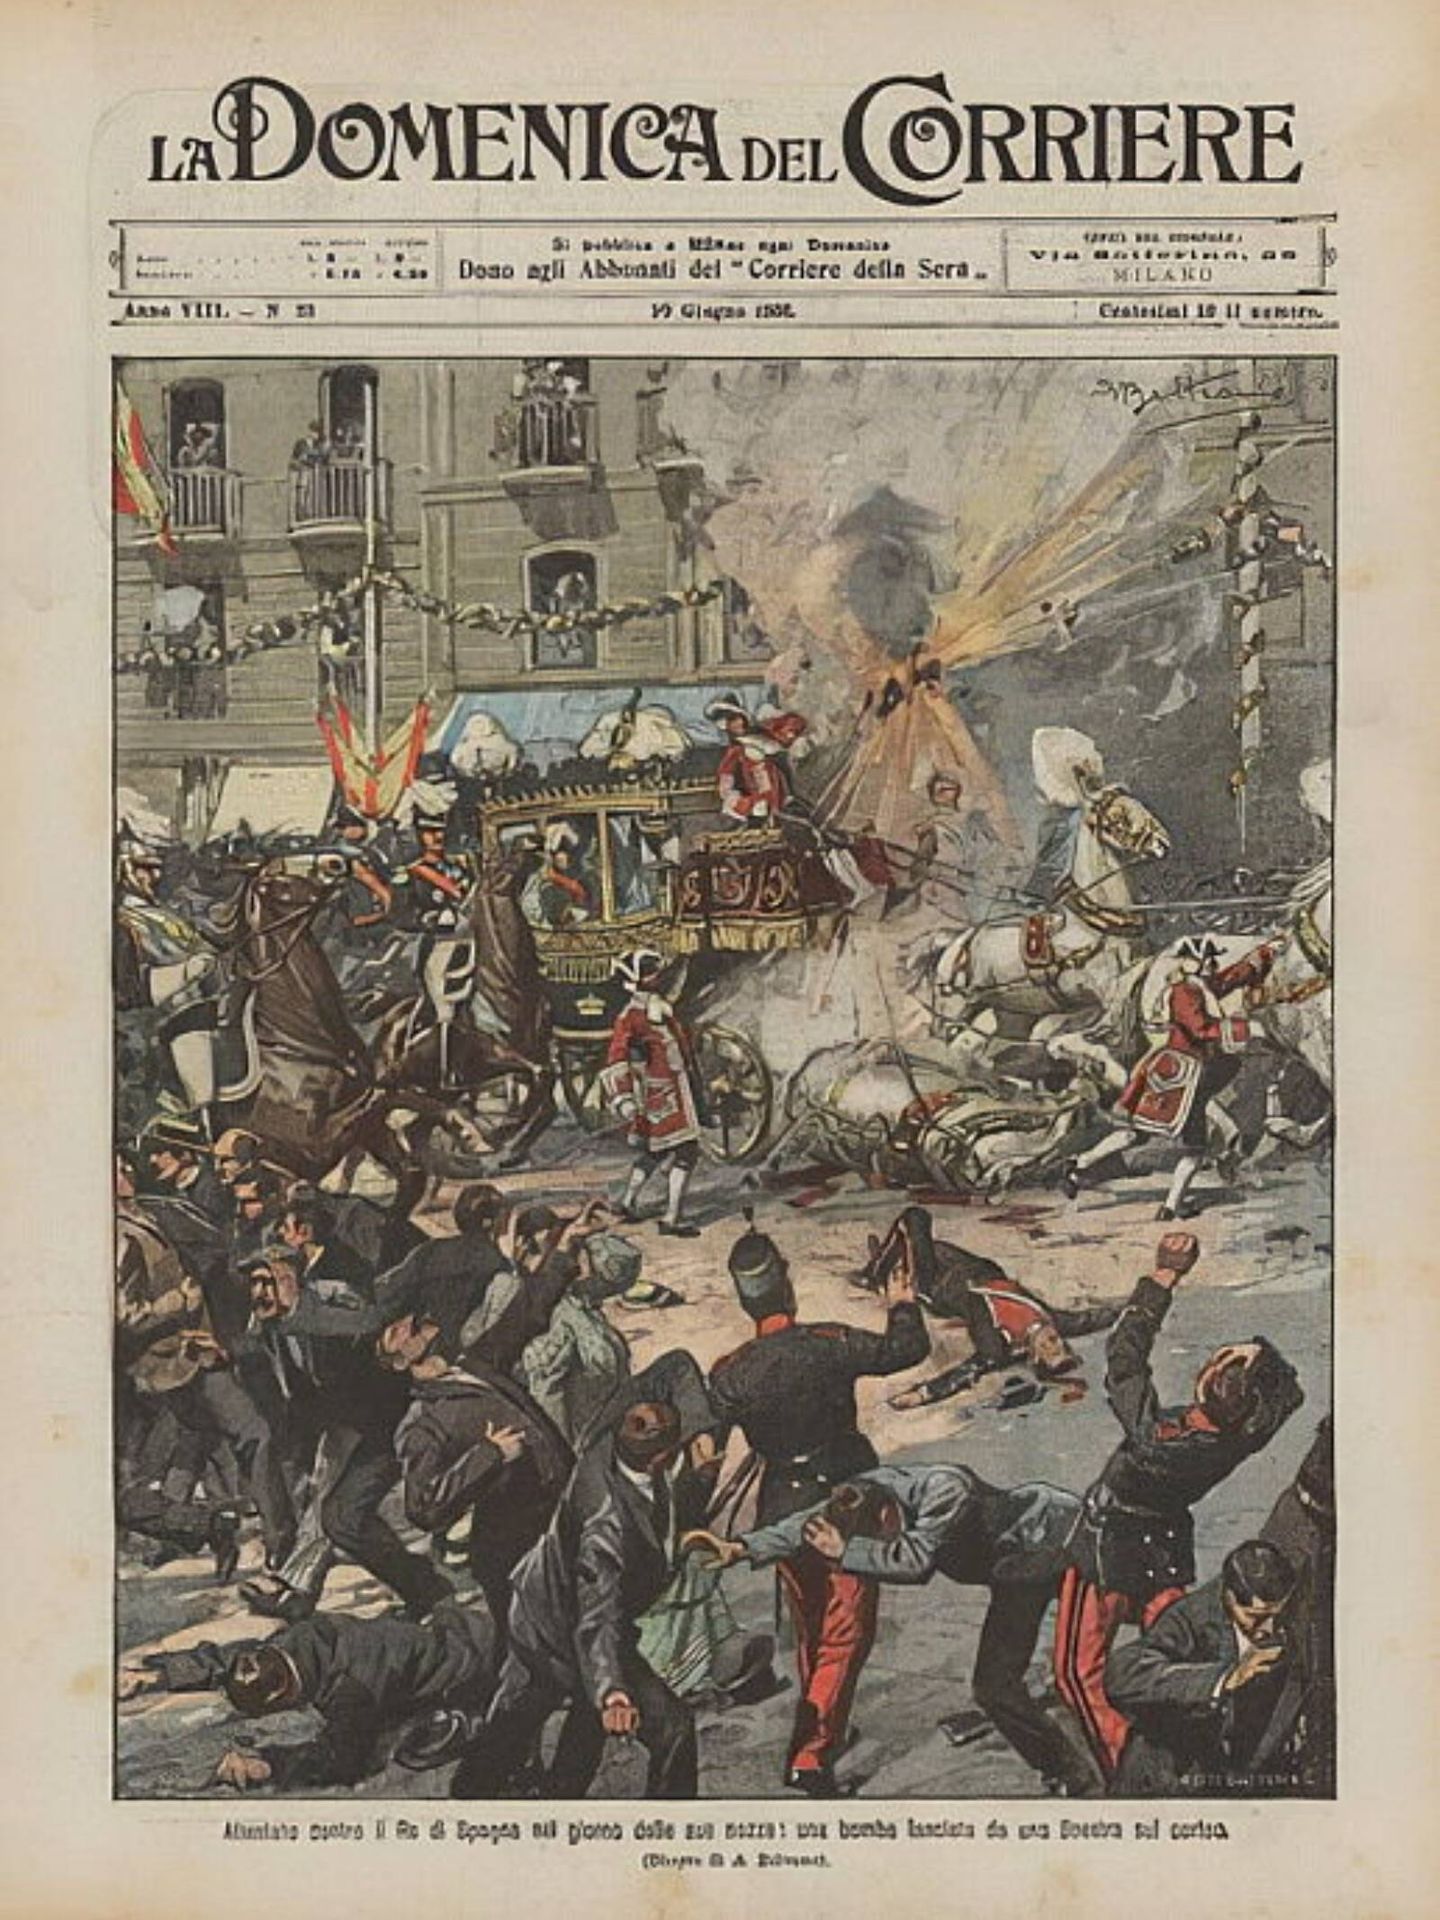 Portada del periódico 'La Domenica del Corriere' con una ilustración del atentado sufrido. (Real Biblioteca/Cortesía)